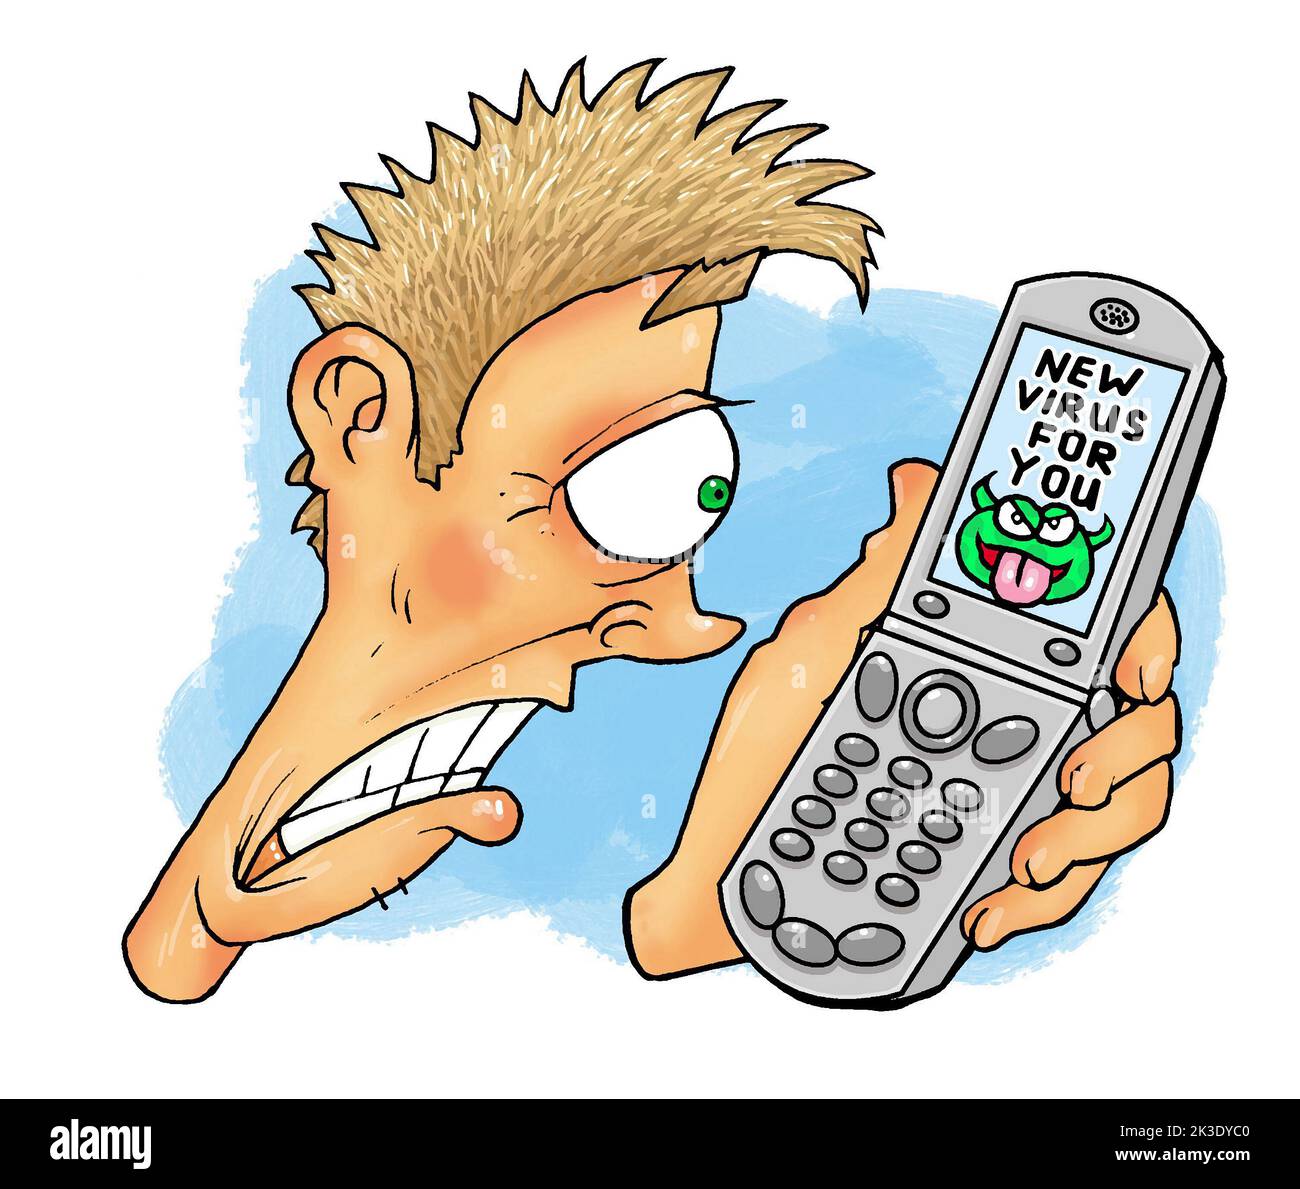 Dessin animé art, l'homme regarde l'écran de téléphone il dit "nouveau virus pour vous" illustrant le concept de virus de logiciel, adware, ransomware, spyware, cheval de troie Banque D'Images